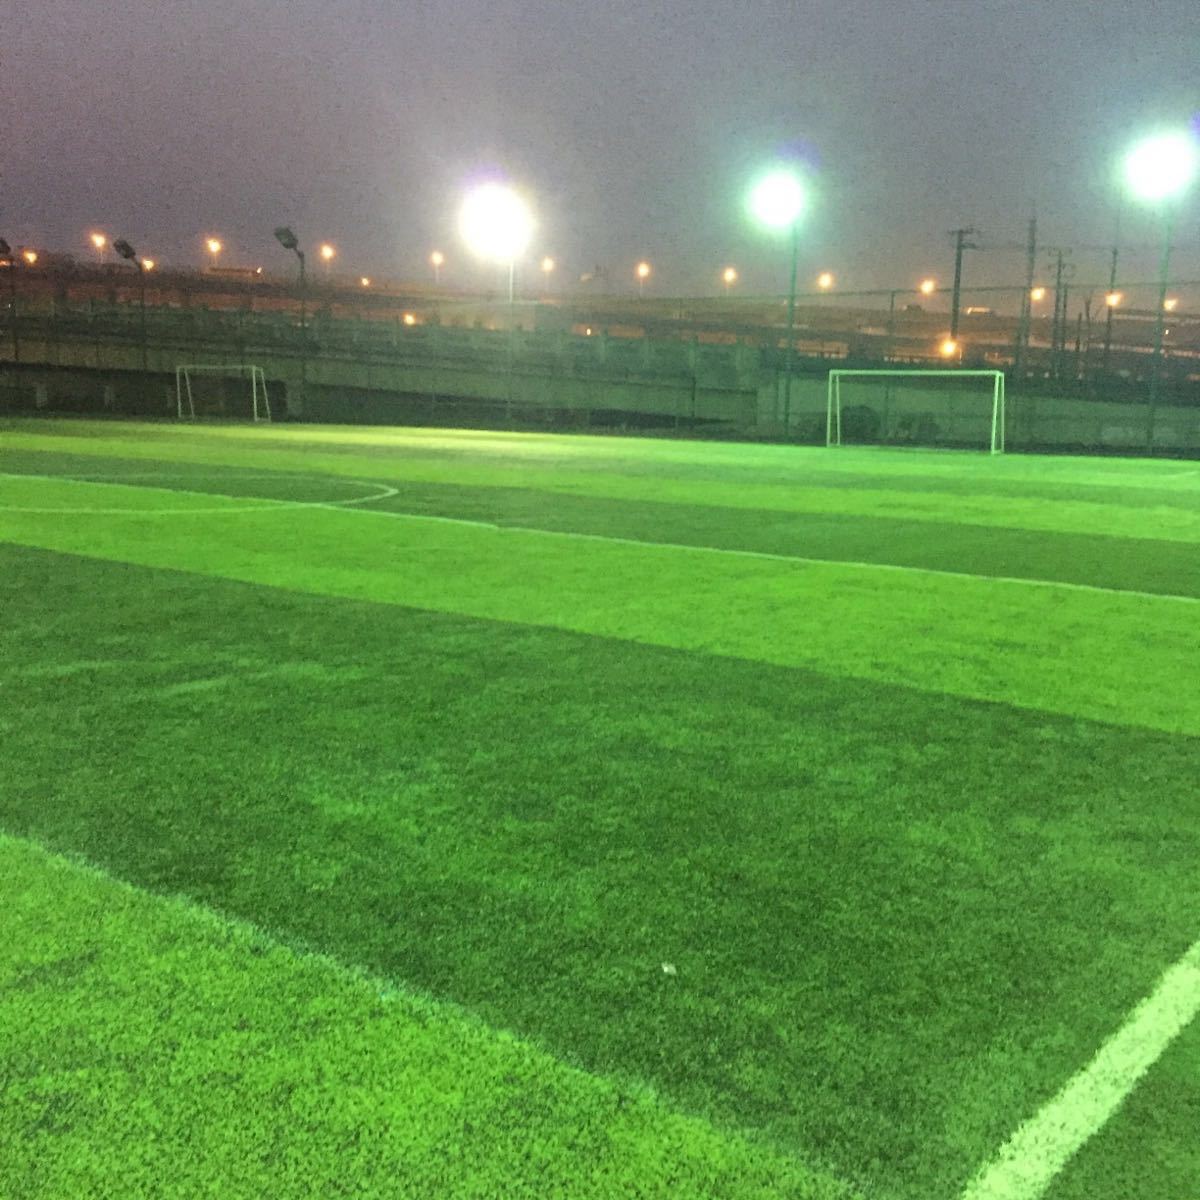 2022滨江爱特公园玩乐攻略,这里是一片收费的足球公园,.